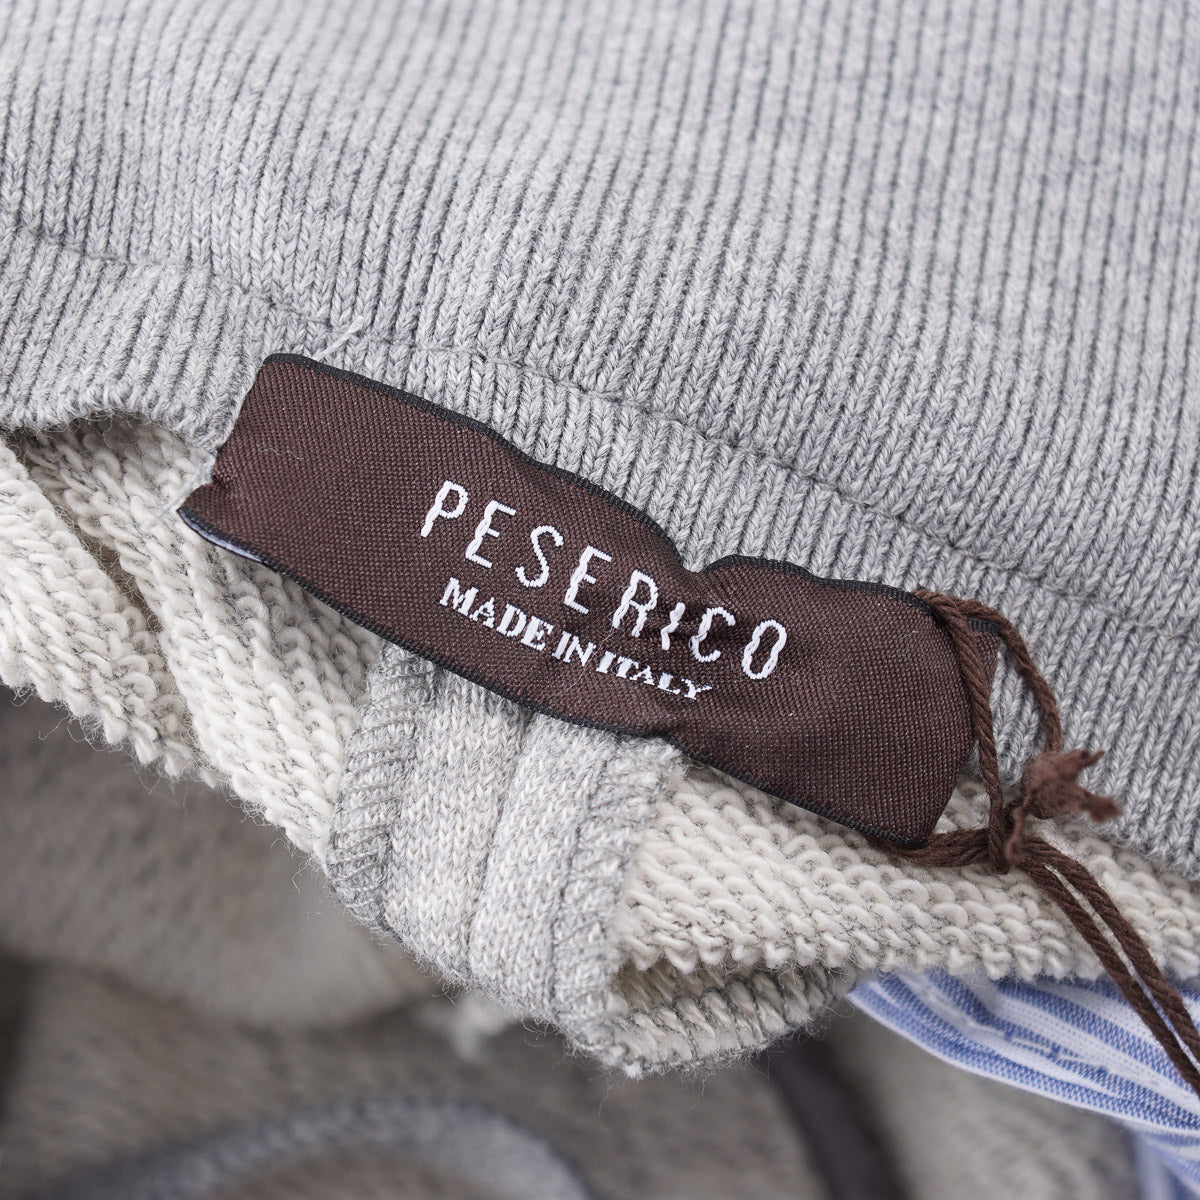 Peserico Jersey Cotton Jogger Pants - Top Shelf Apparel